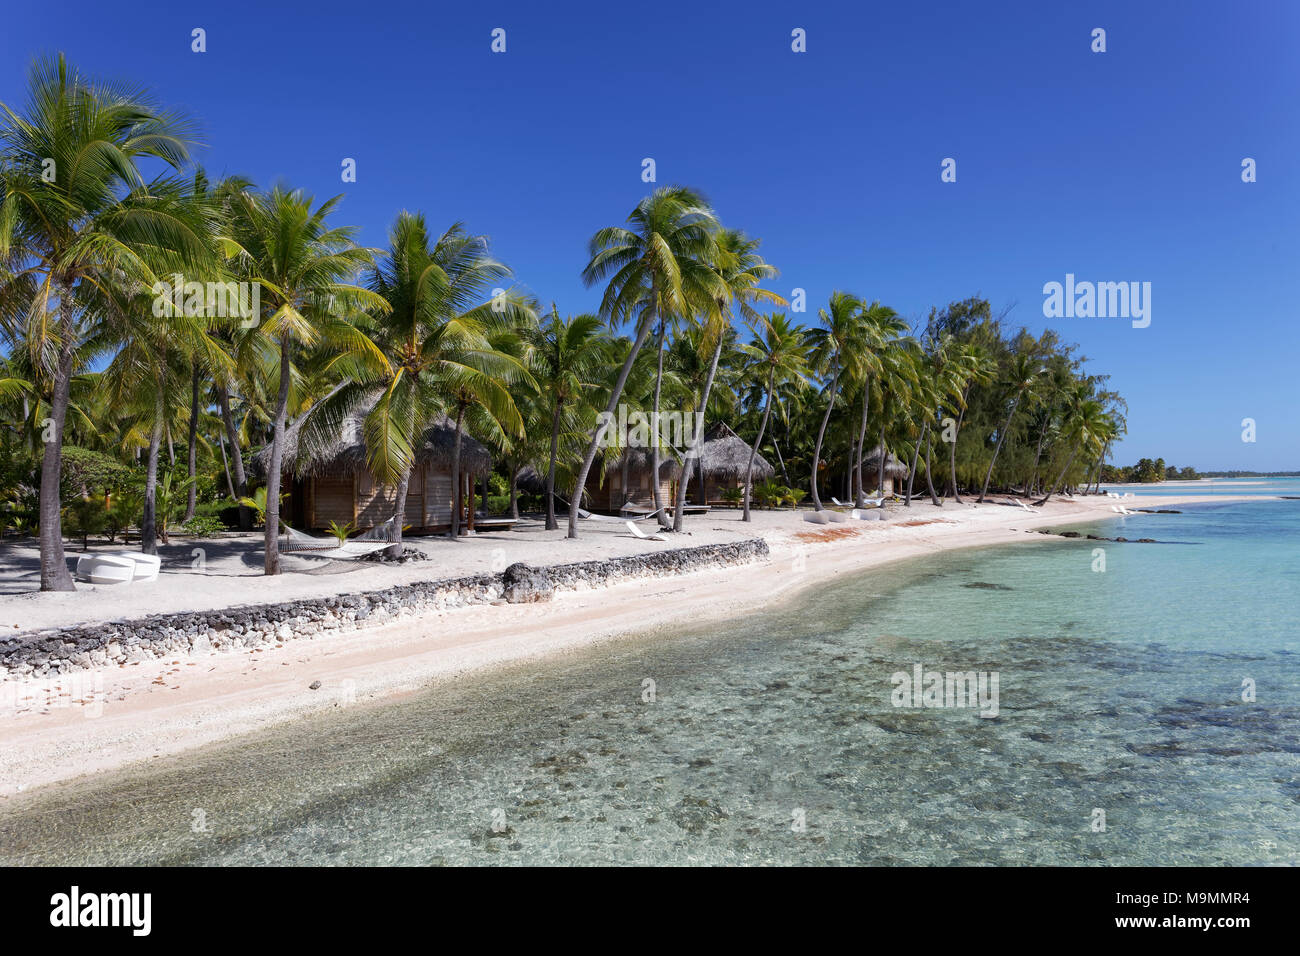 Bungalows sur la plage sous les palmiers, l'atoll de Tikehau, archipel des Tuamotu, îles de la société, Iles du Vent, Polynésie Française Banque D'Images